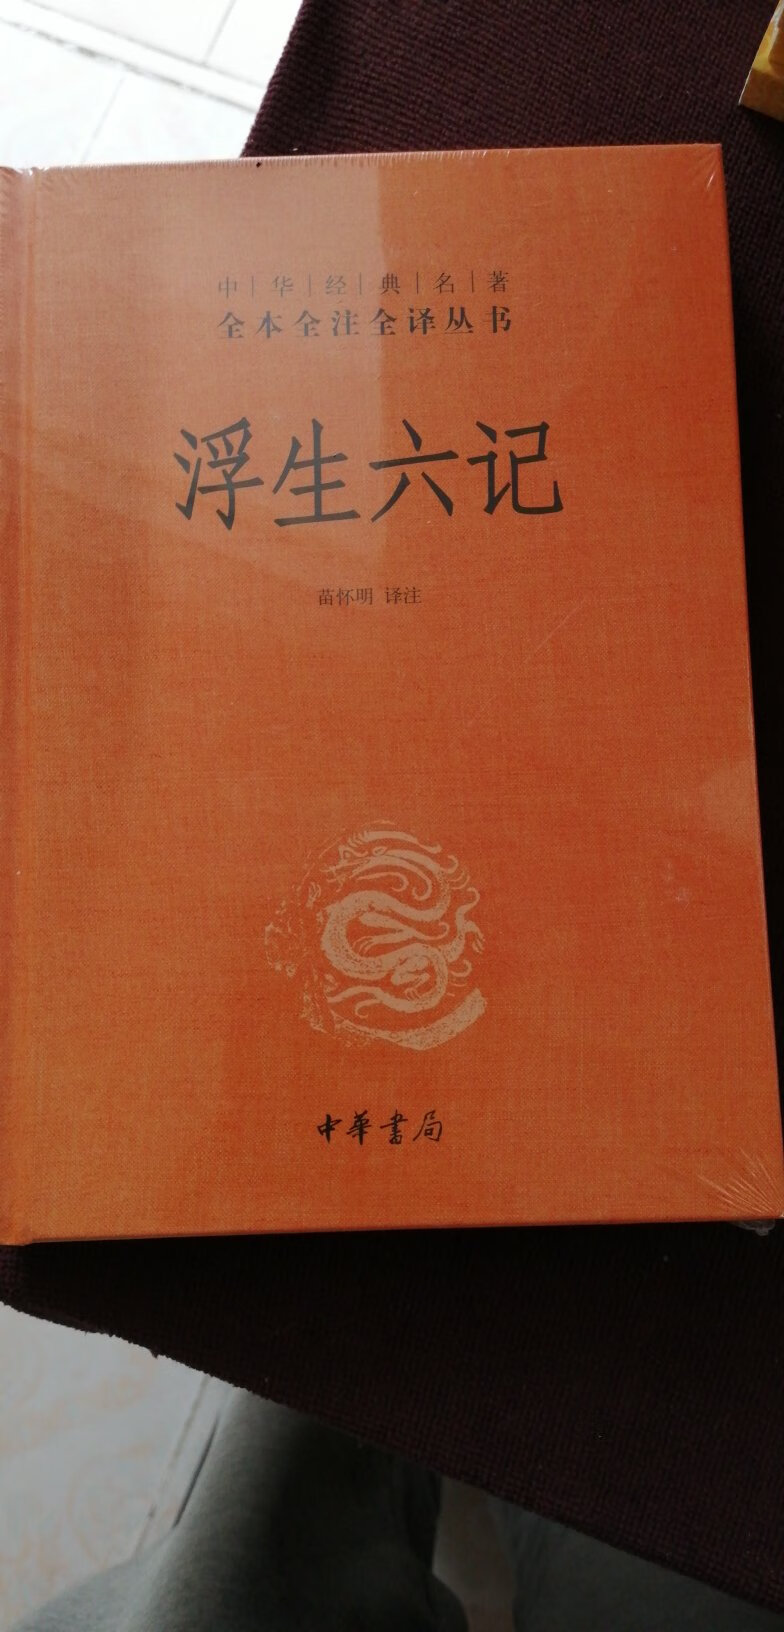 本来想买另外一个版本的，正好中华书局有货就顺带一起买了，沈三白的书值得一看！